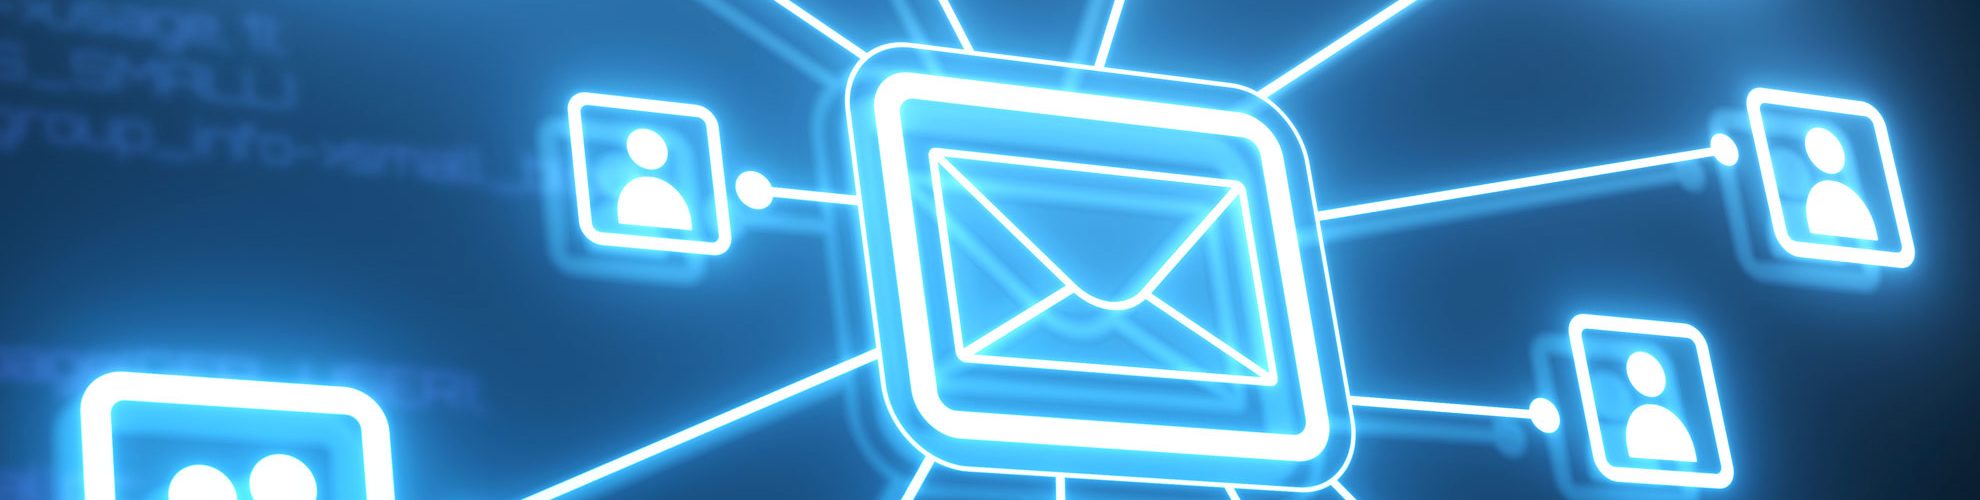 mail marketing senza consenso